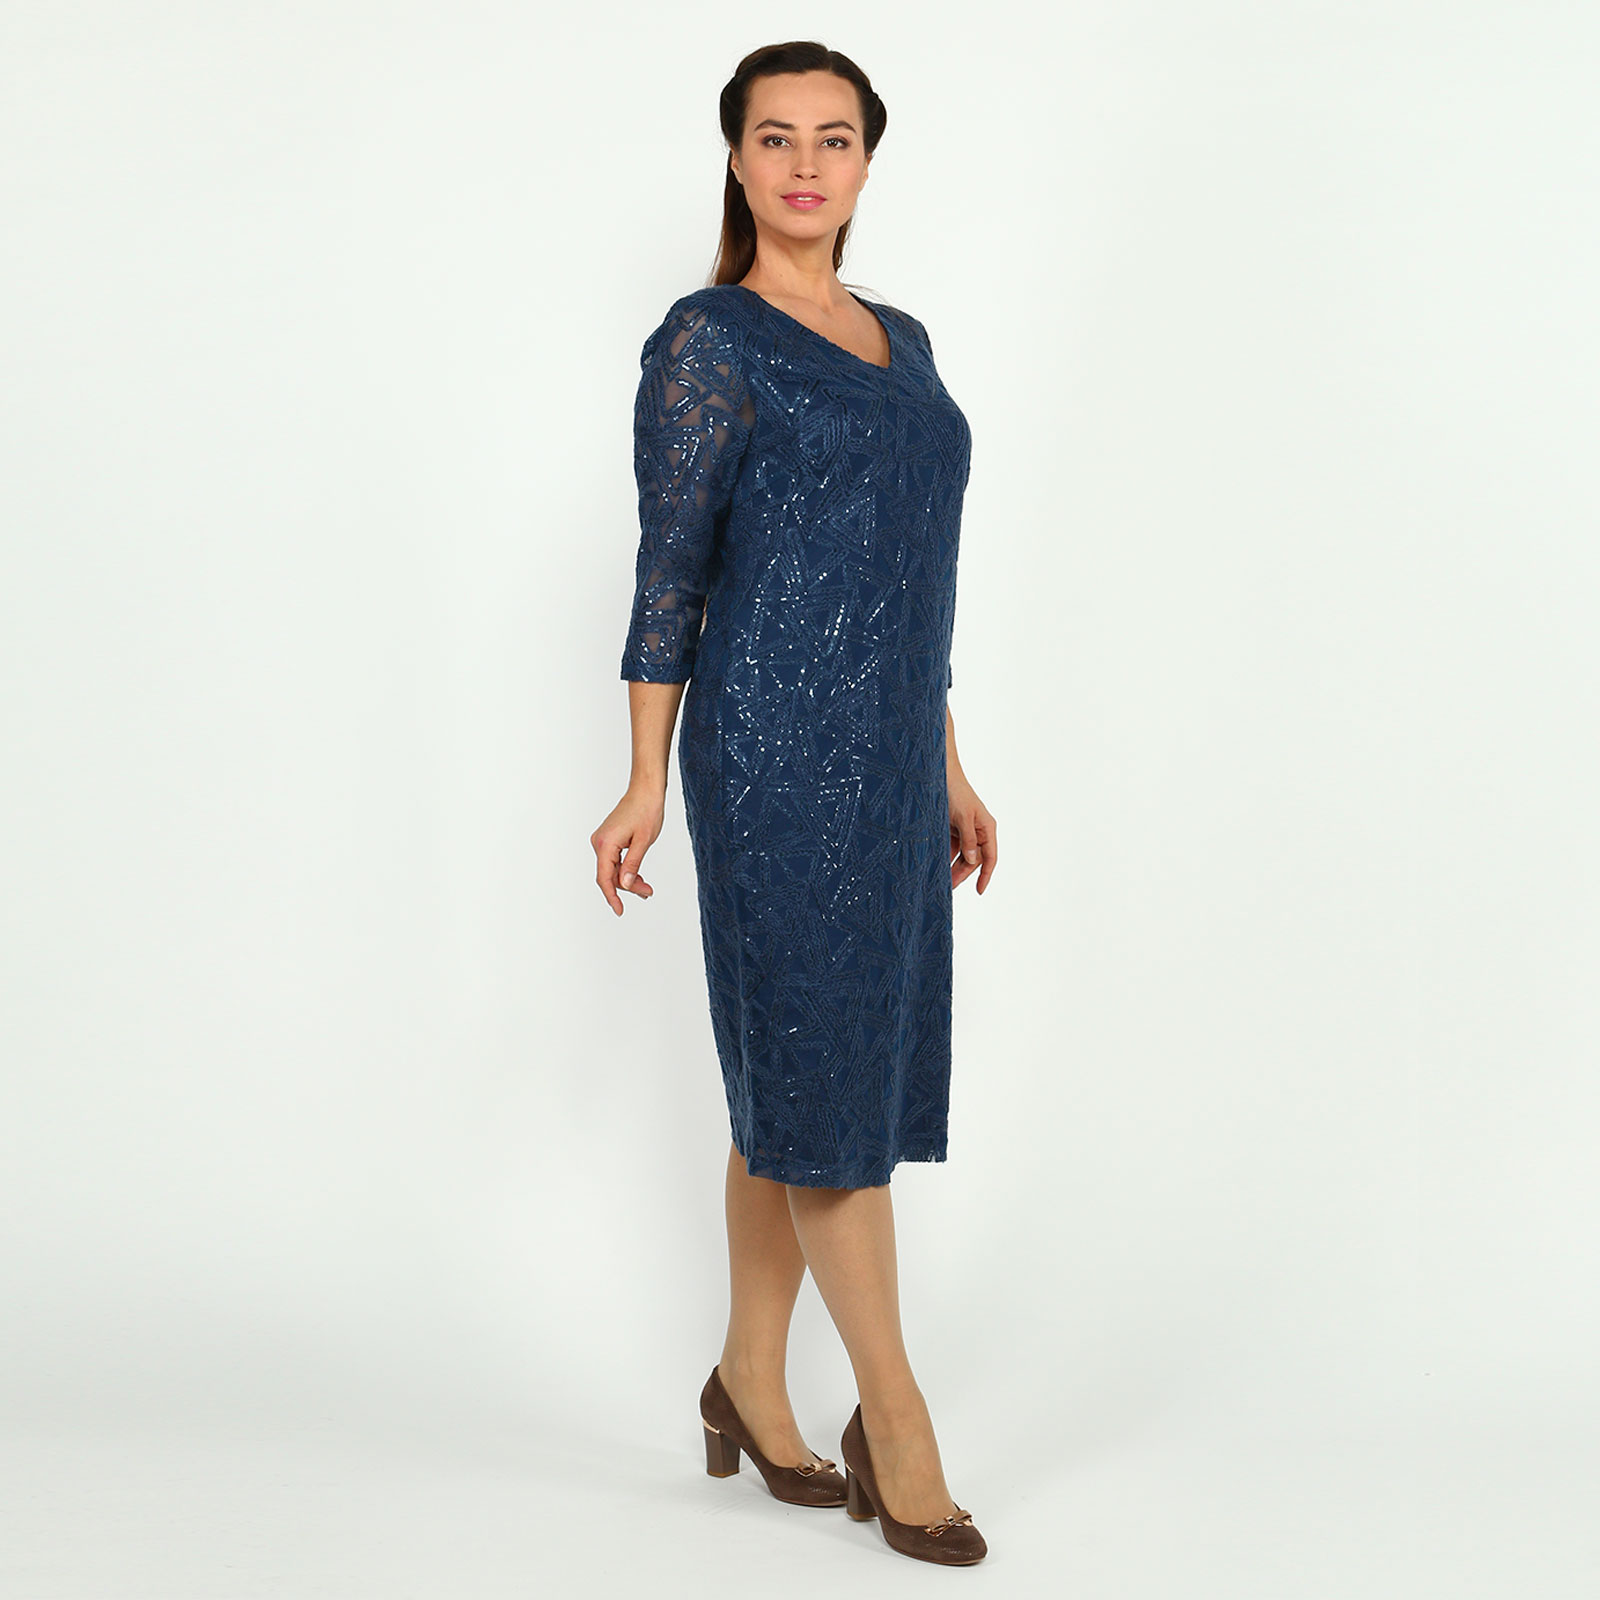 Платье с рисунком из пайеток Elletto Life, размер 62, цвет синий - фото 3